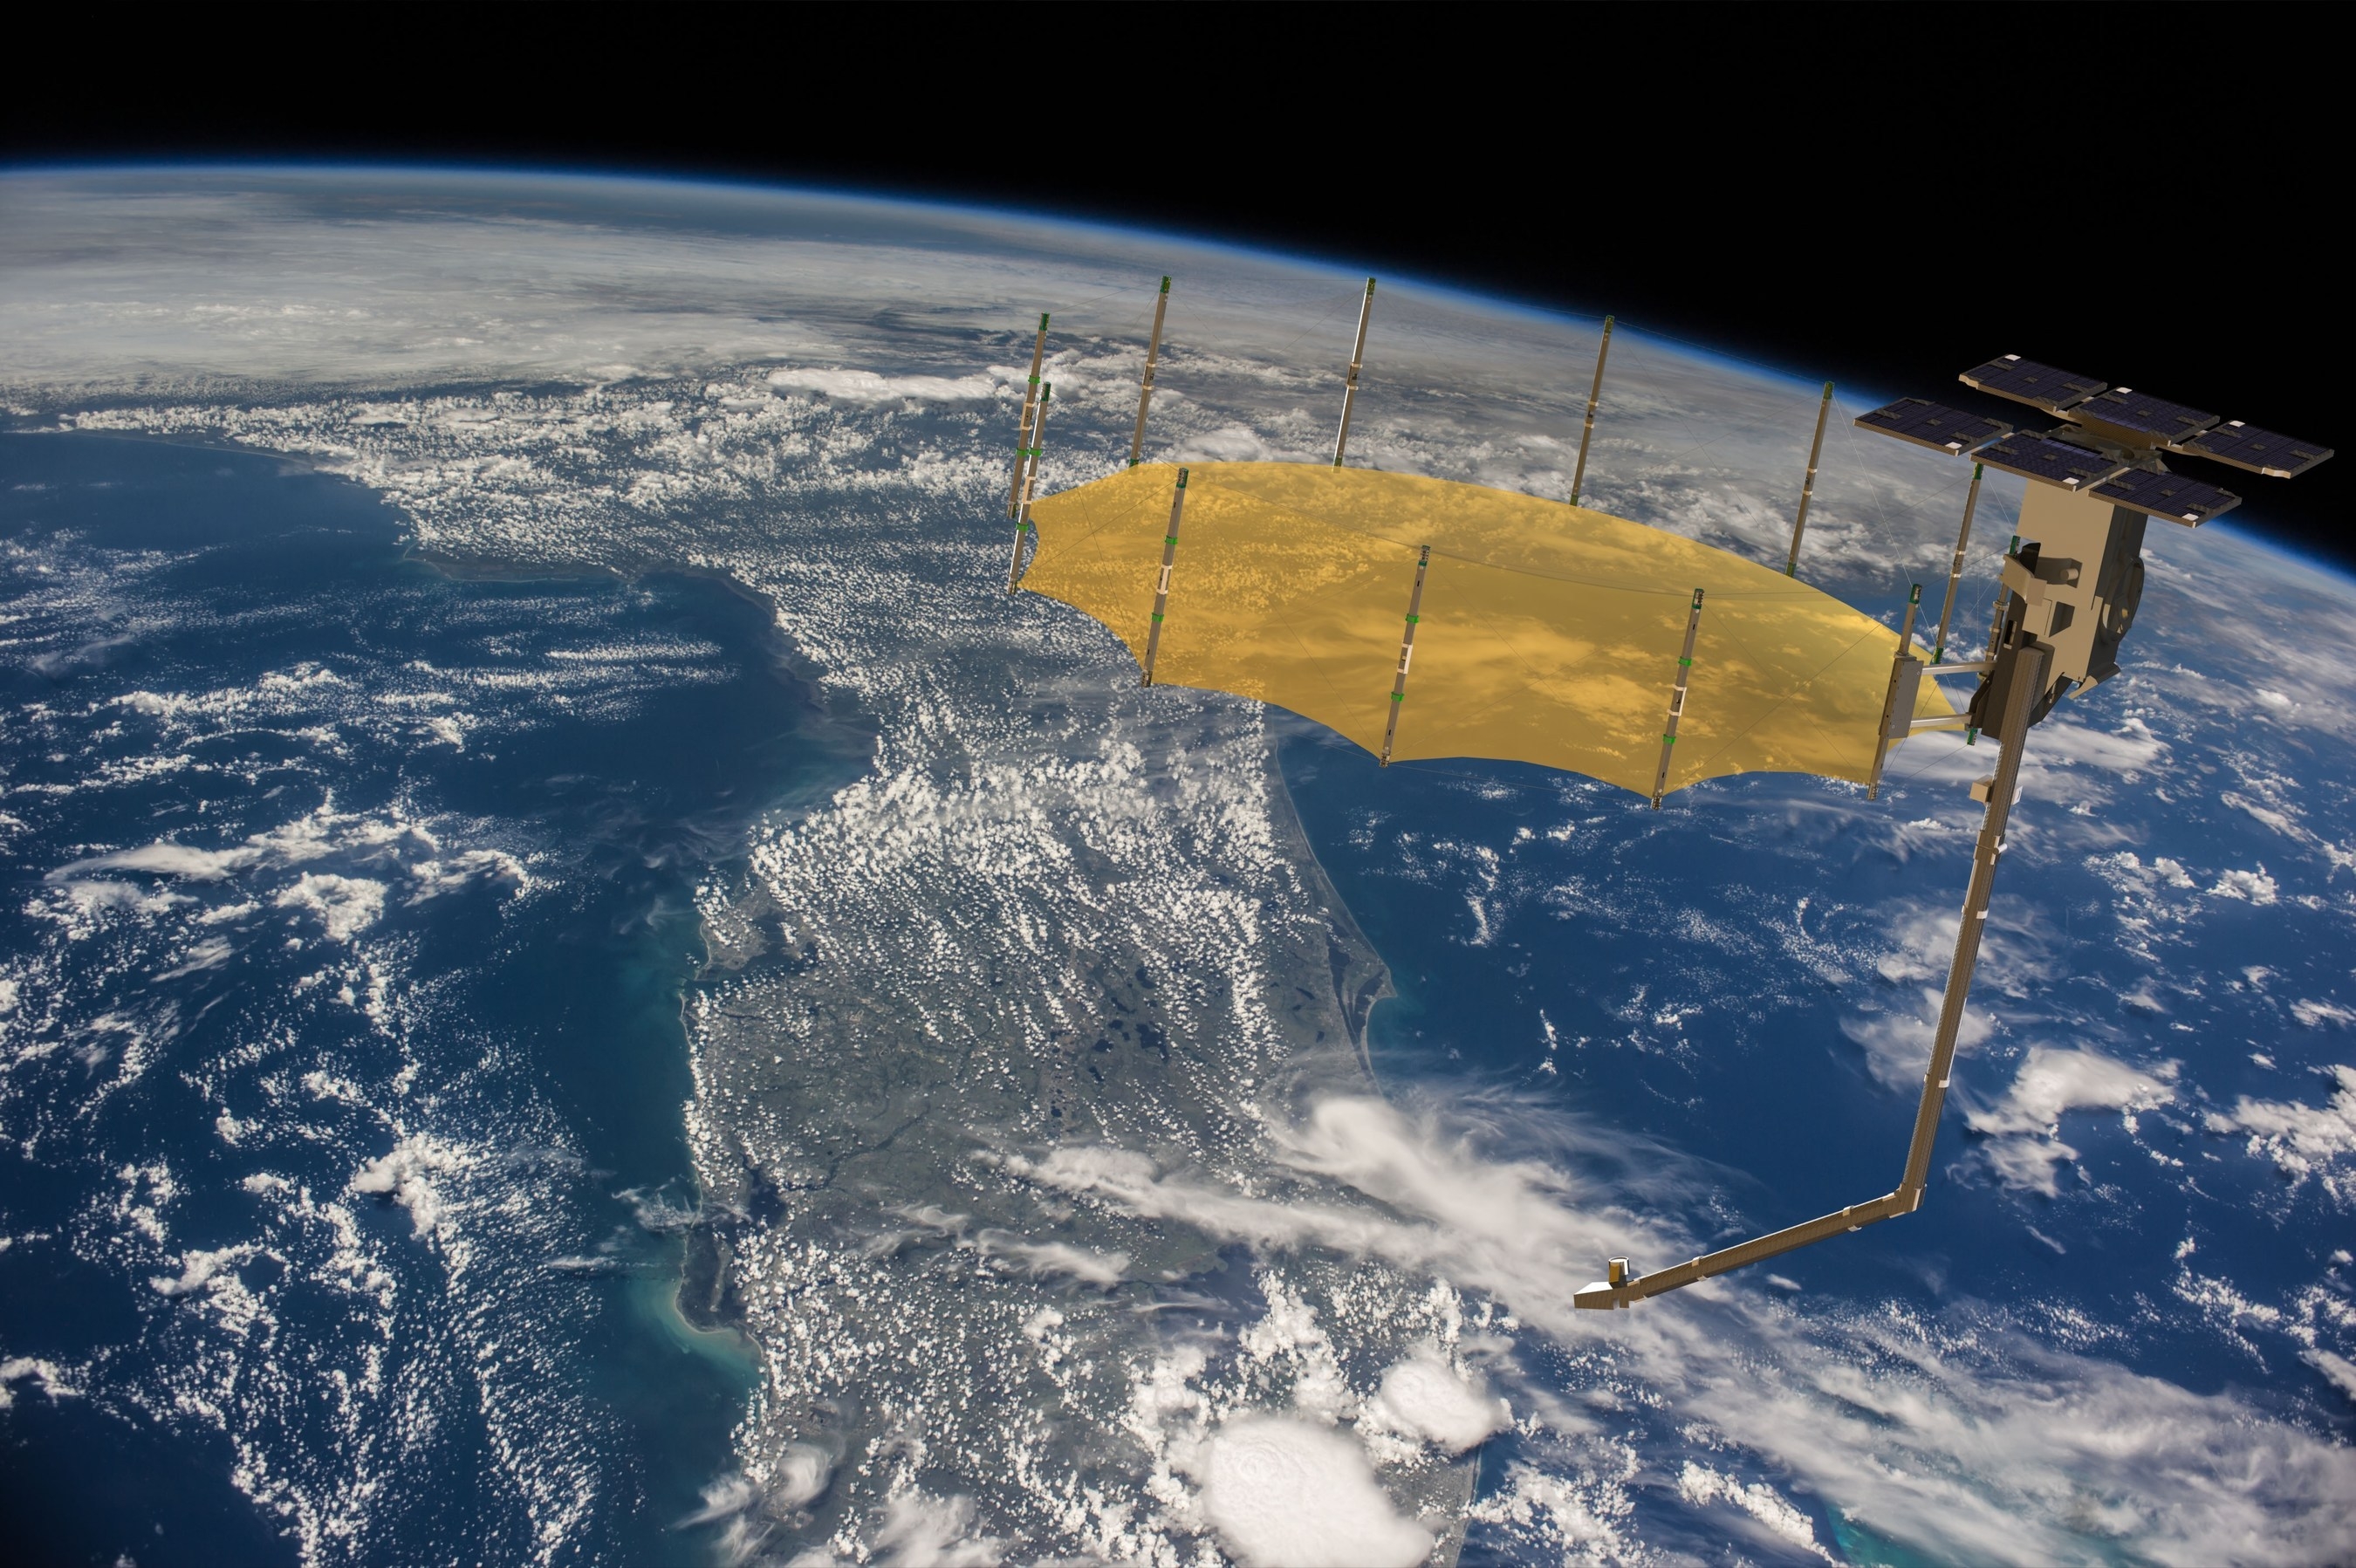 Capella Space представил новый спутник Sequoia для съёмки Земли с высоким разрешением